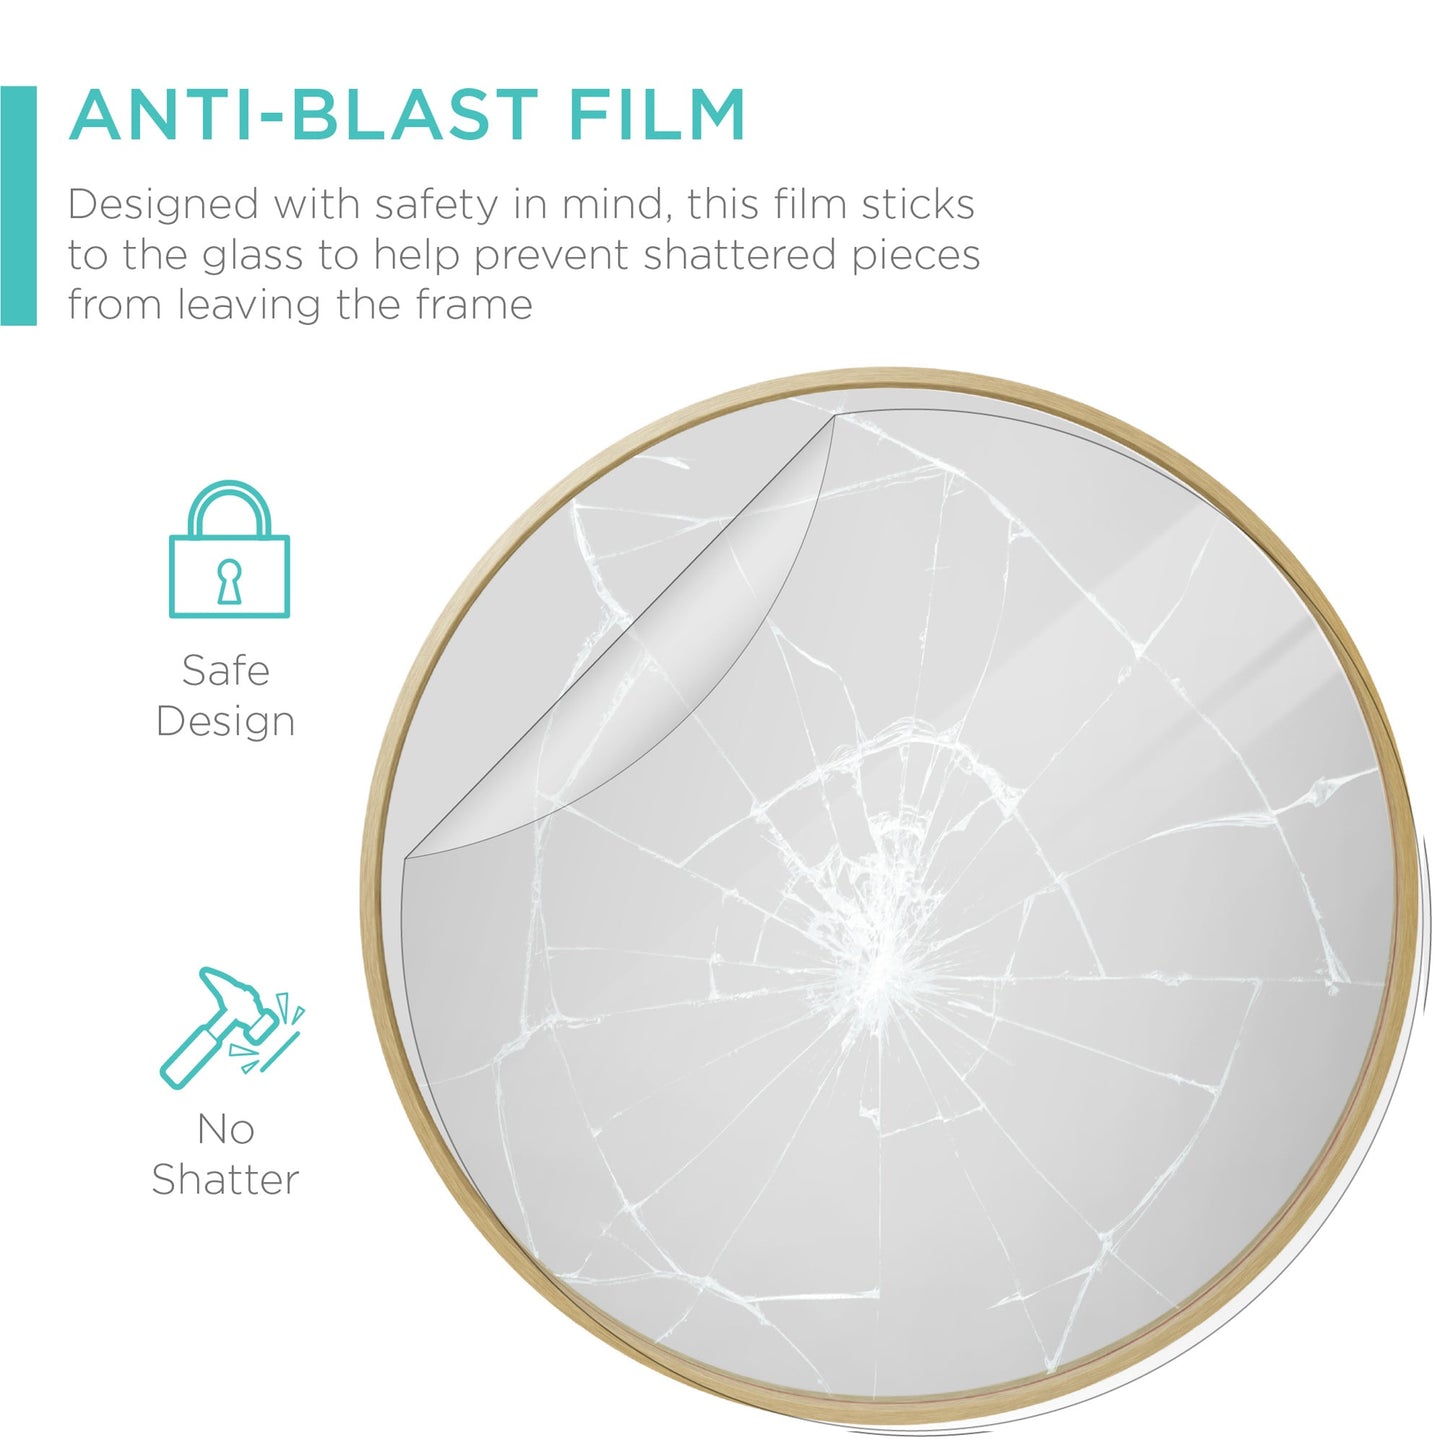 Framed Round Bathroom Vanity Wall Mirror w/ Anti-Blast Film - 36in